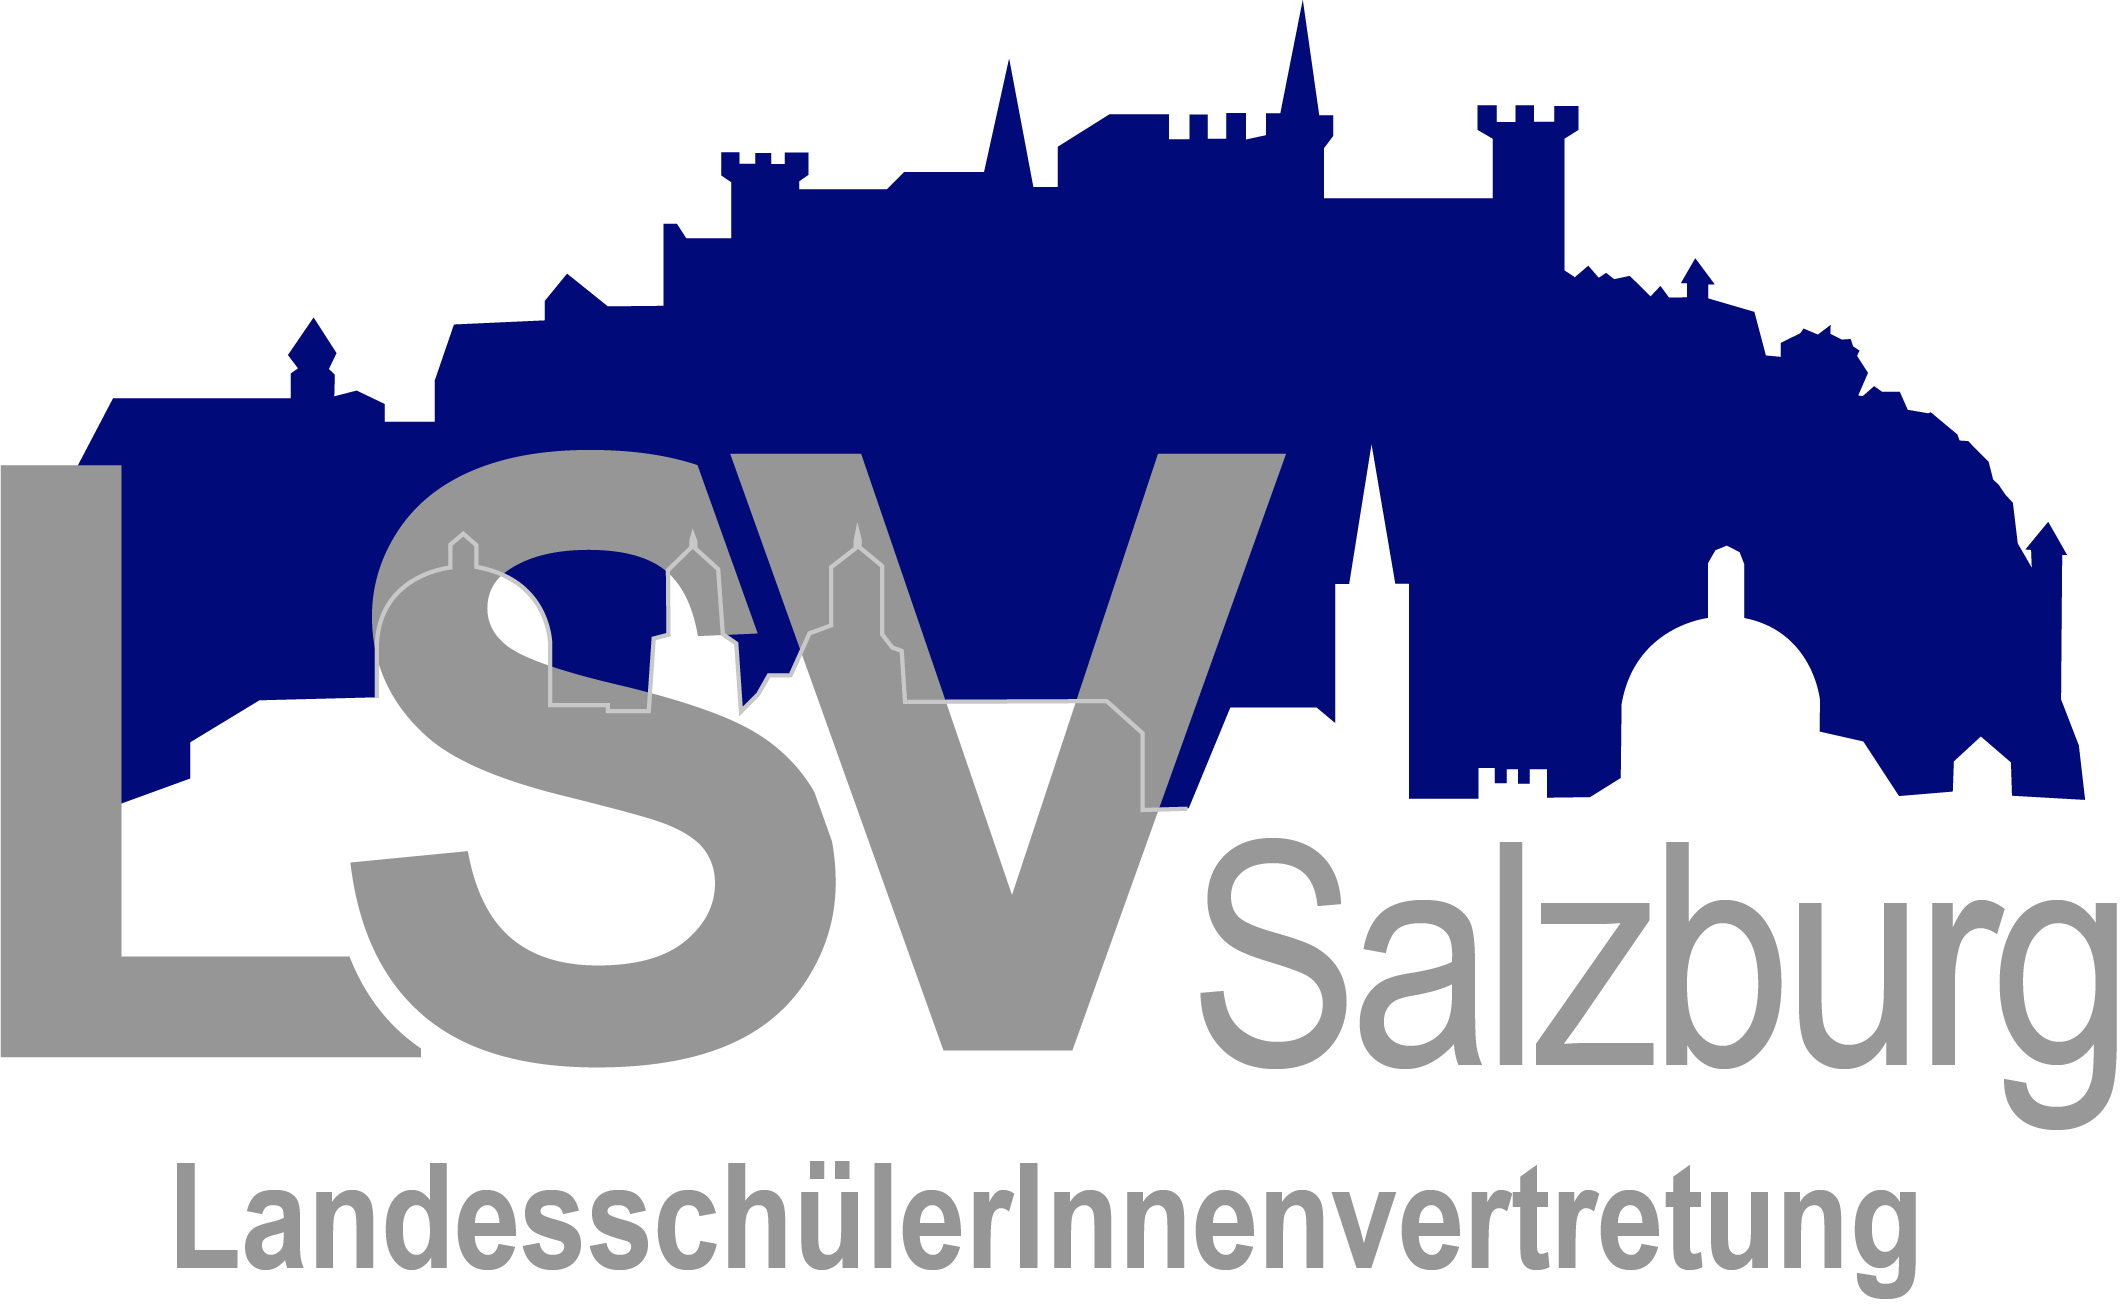 Schriftzug LSV Salzburg vor blau-grau-weißer Silouette Salzburgs